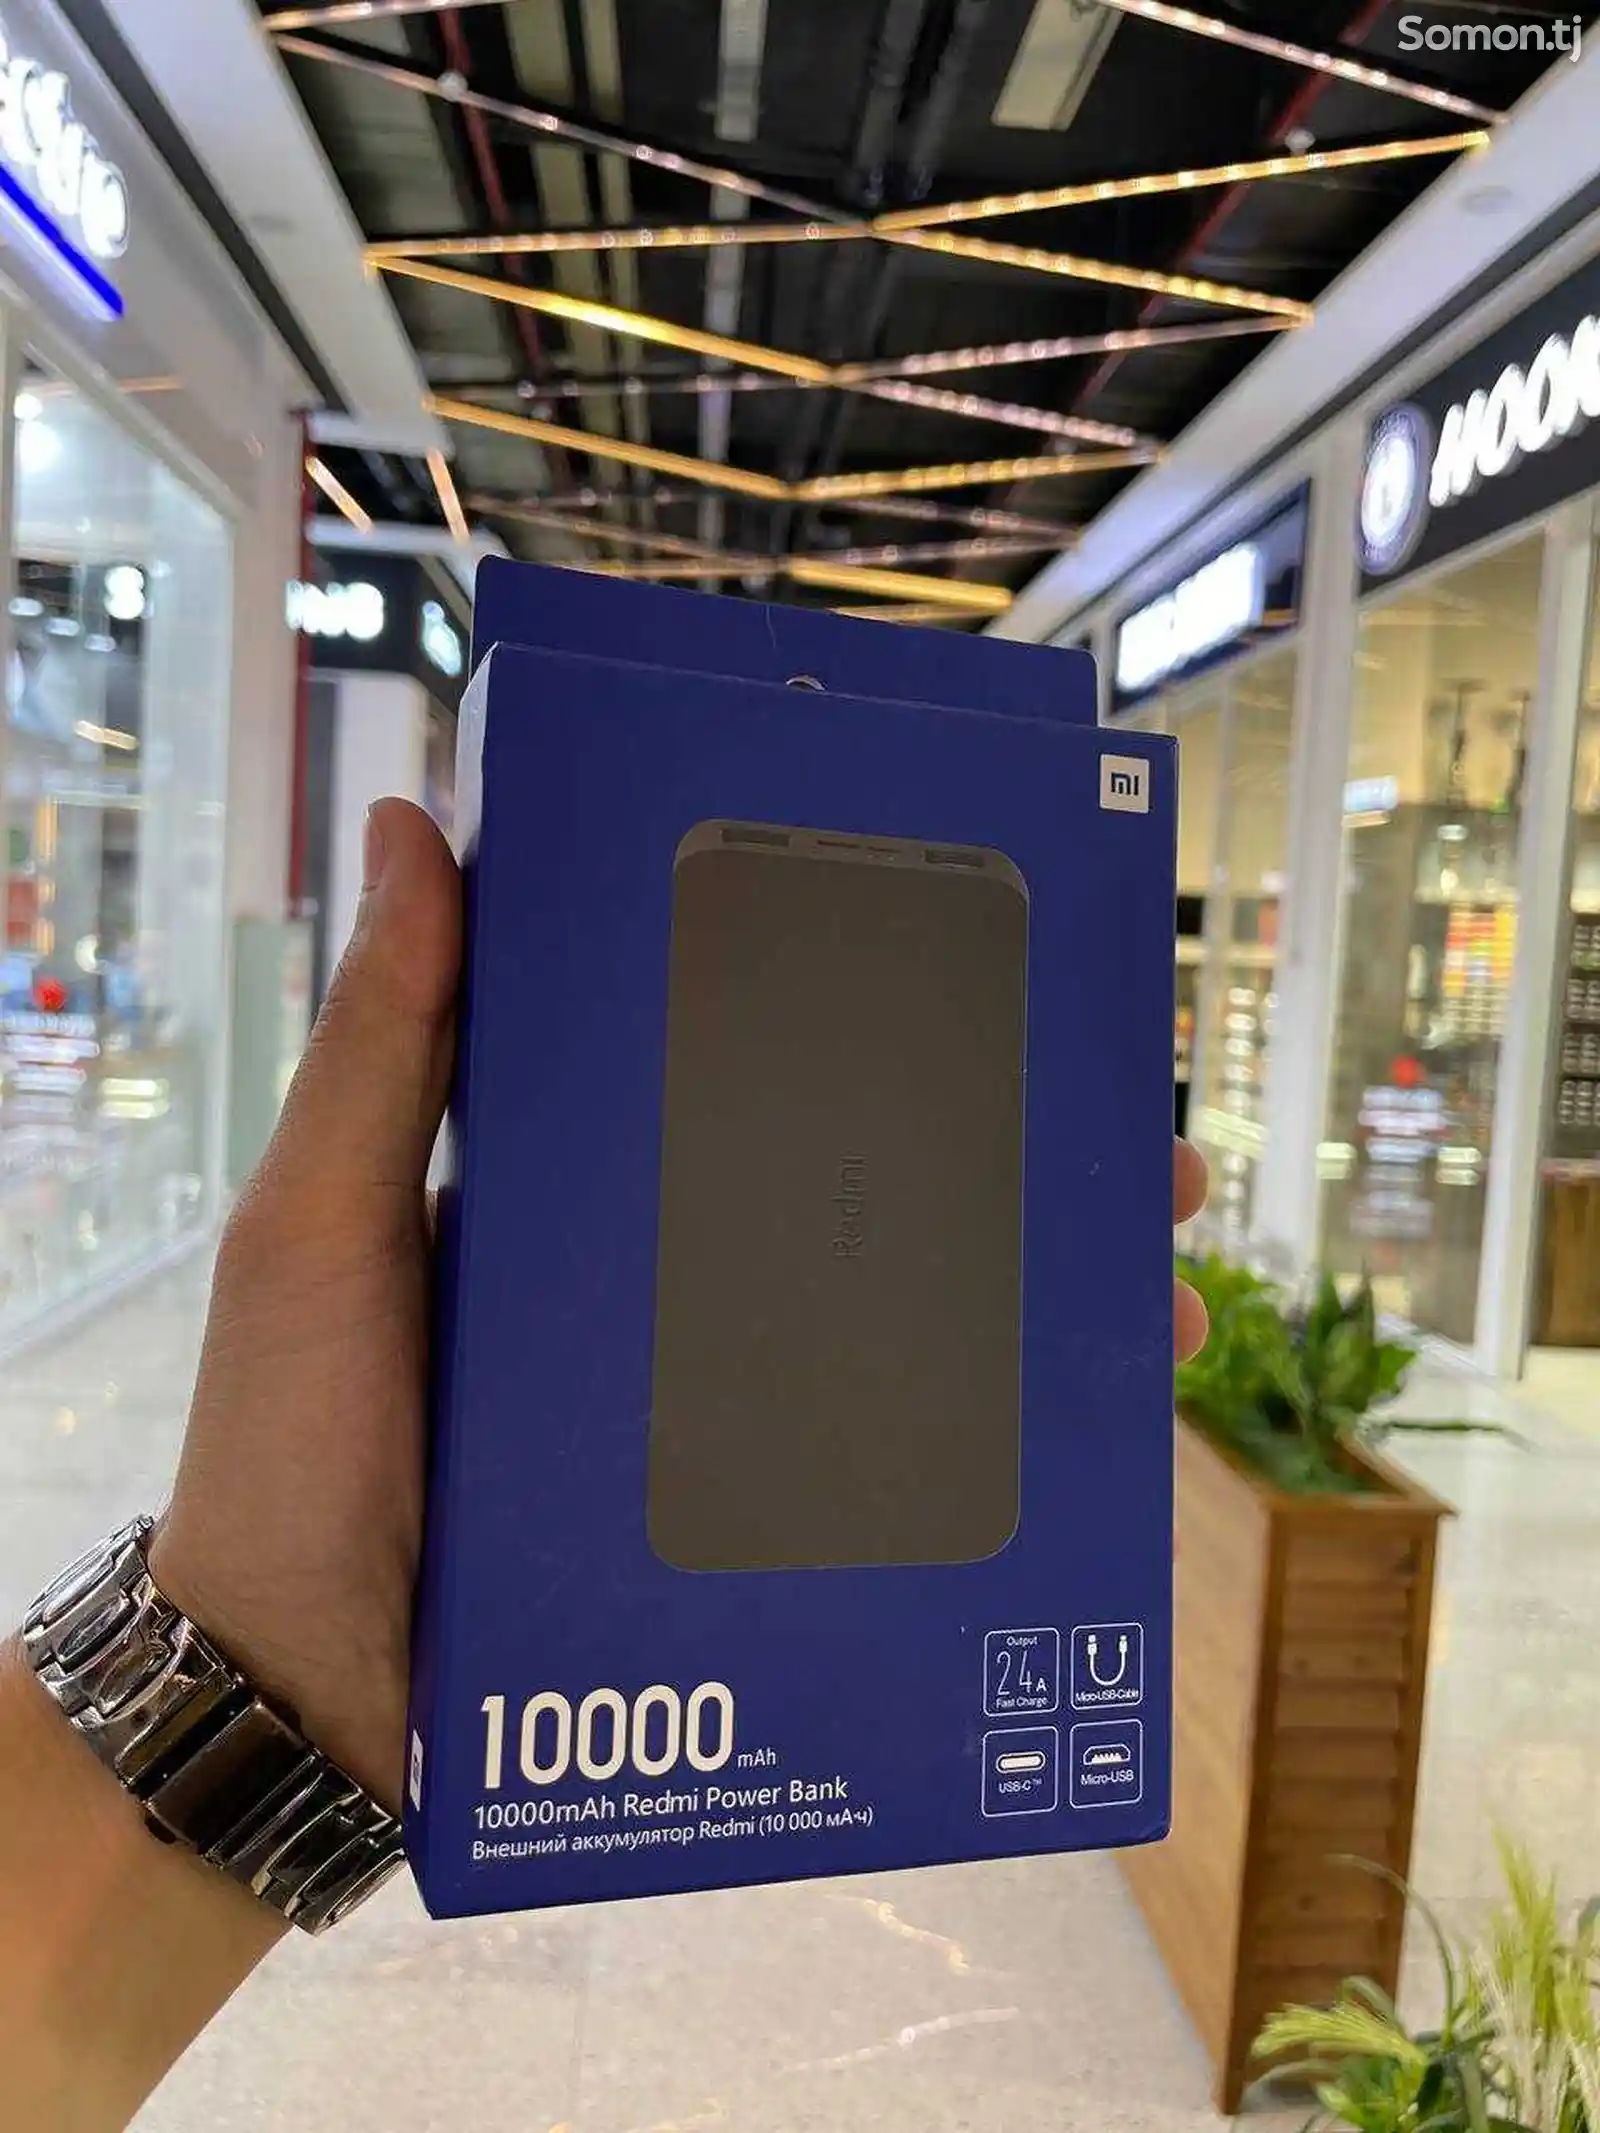 Внешний Aккумулятор Xiaomi Redmi Power Bank 10000 mAh-1